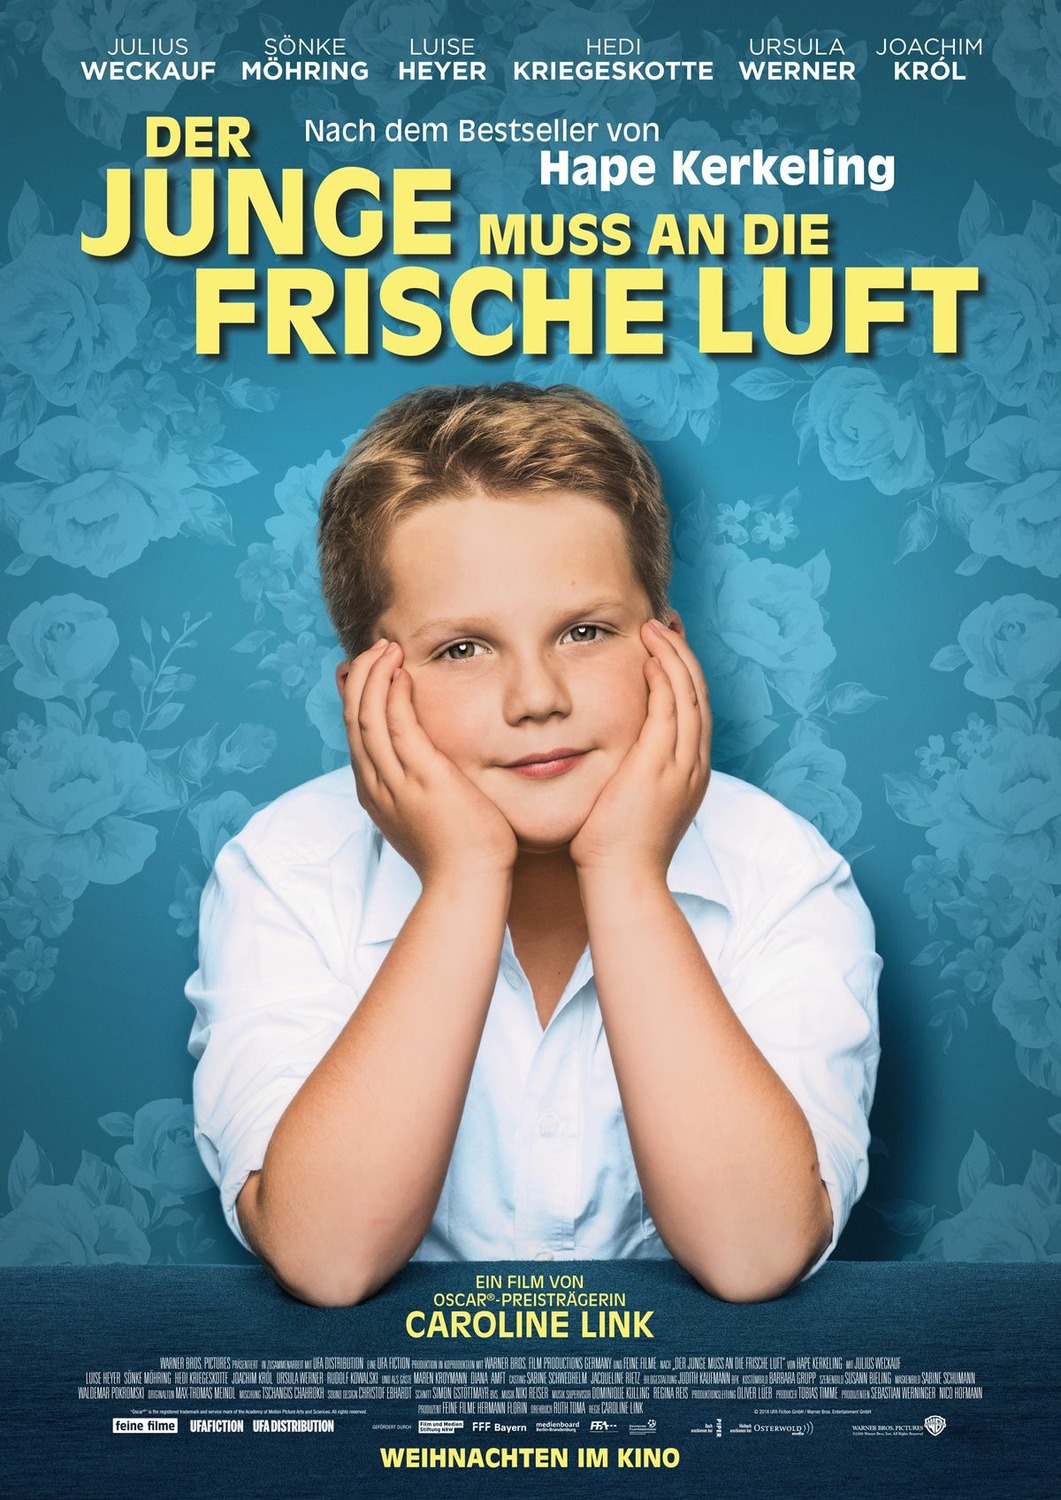 Extra Large Movie Poster Image for Der Junge muss an die frische Luft 